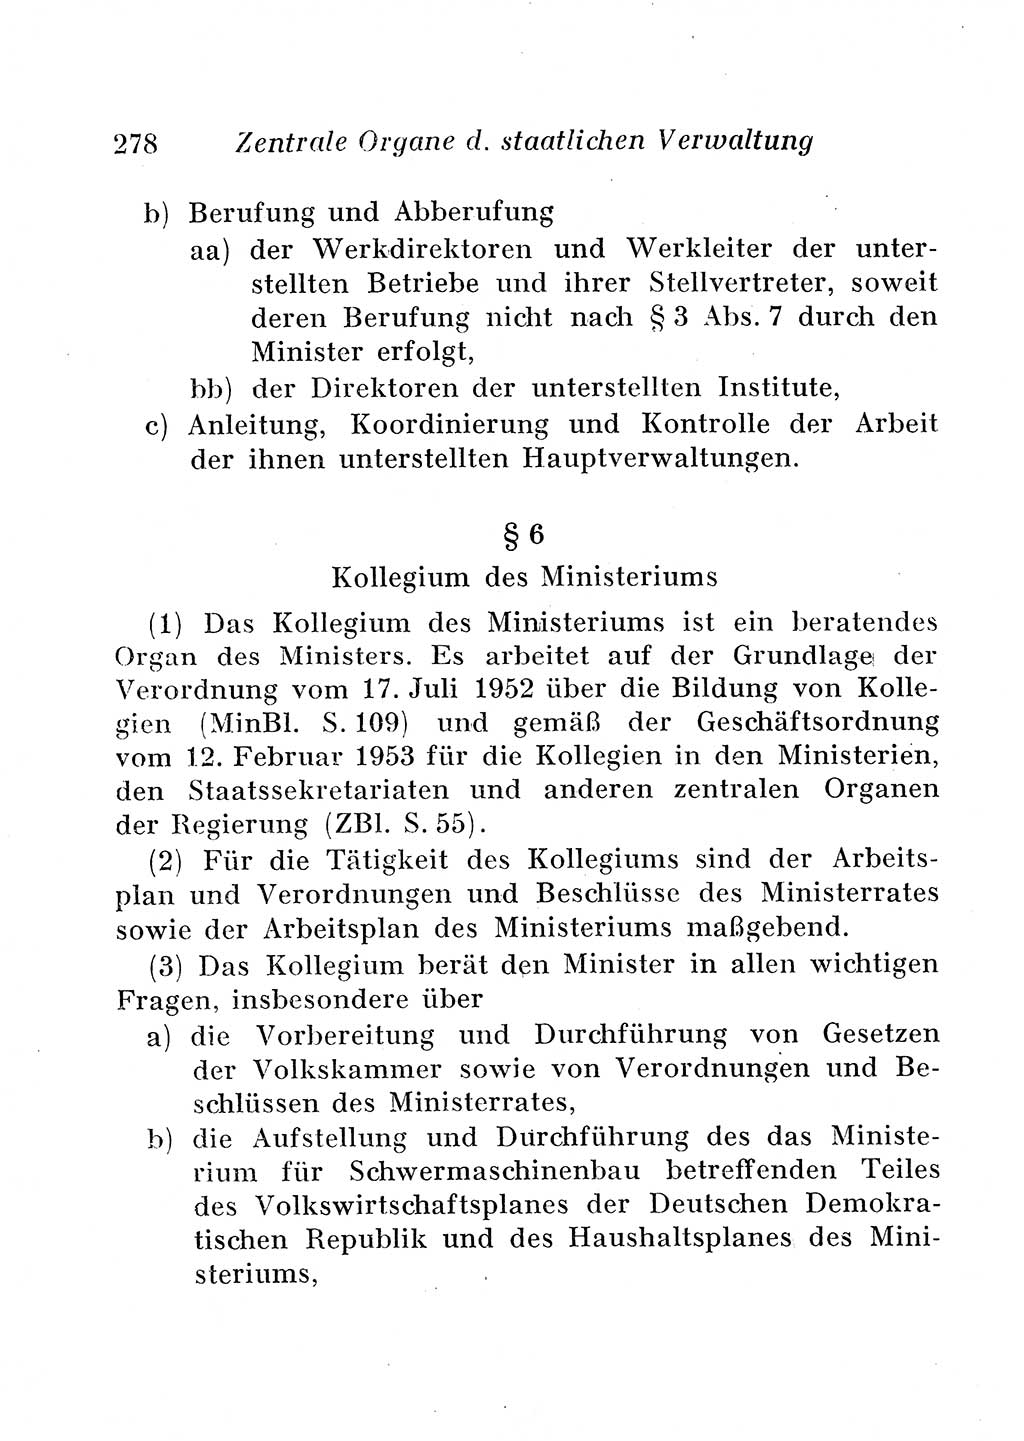 Staats- und verwaltungsrechtliche Gesetze der Deutschen Demokratischen Republik (DDR) 1958, Seite 278 (StVerwR Ges. DDR 1958, S. 278)